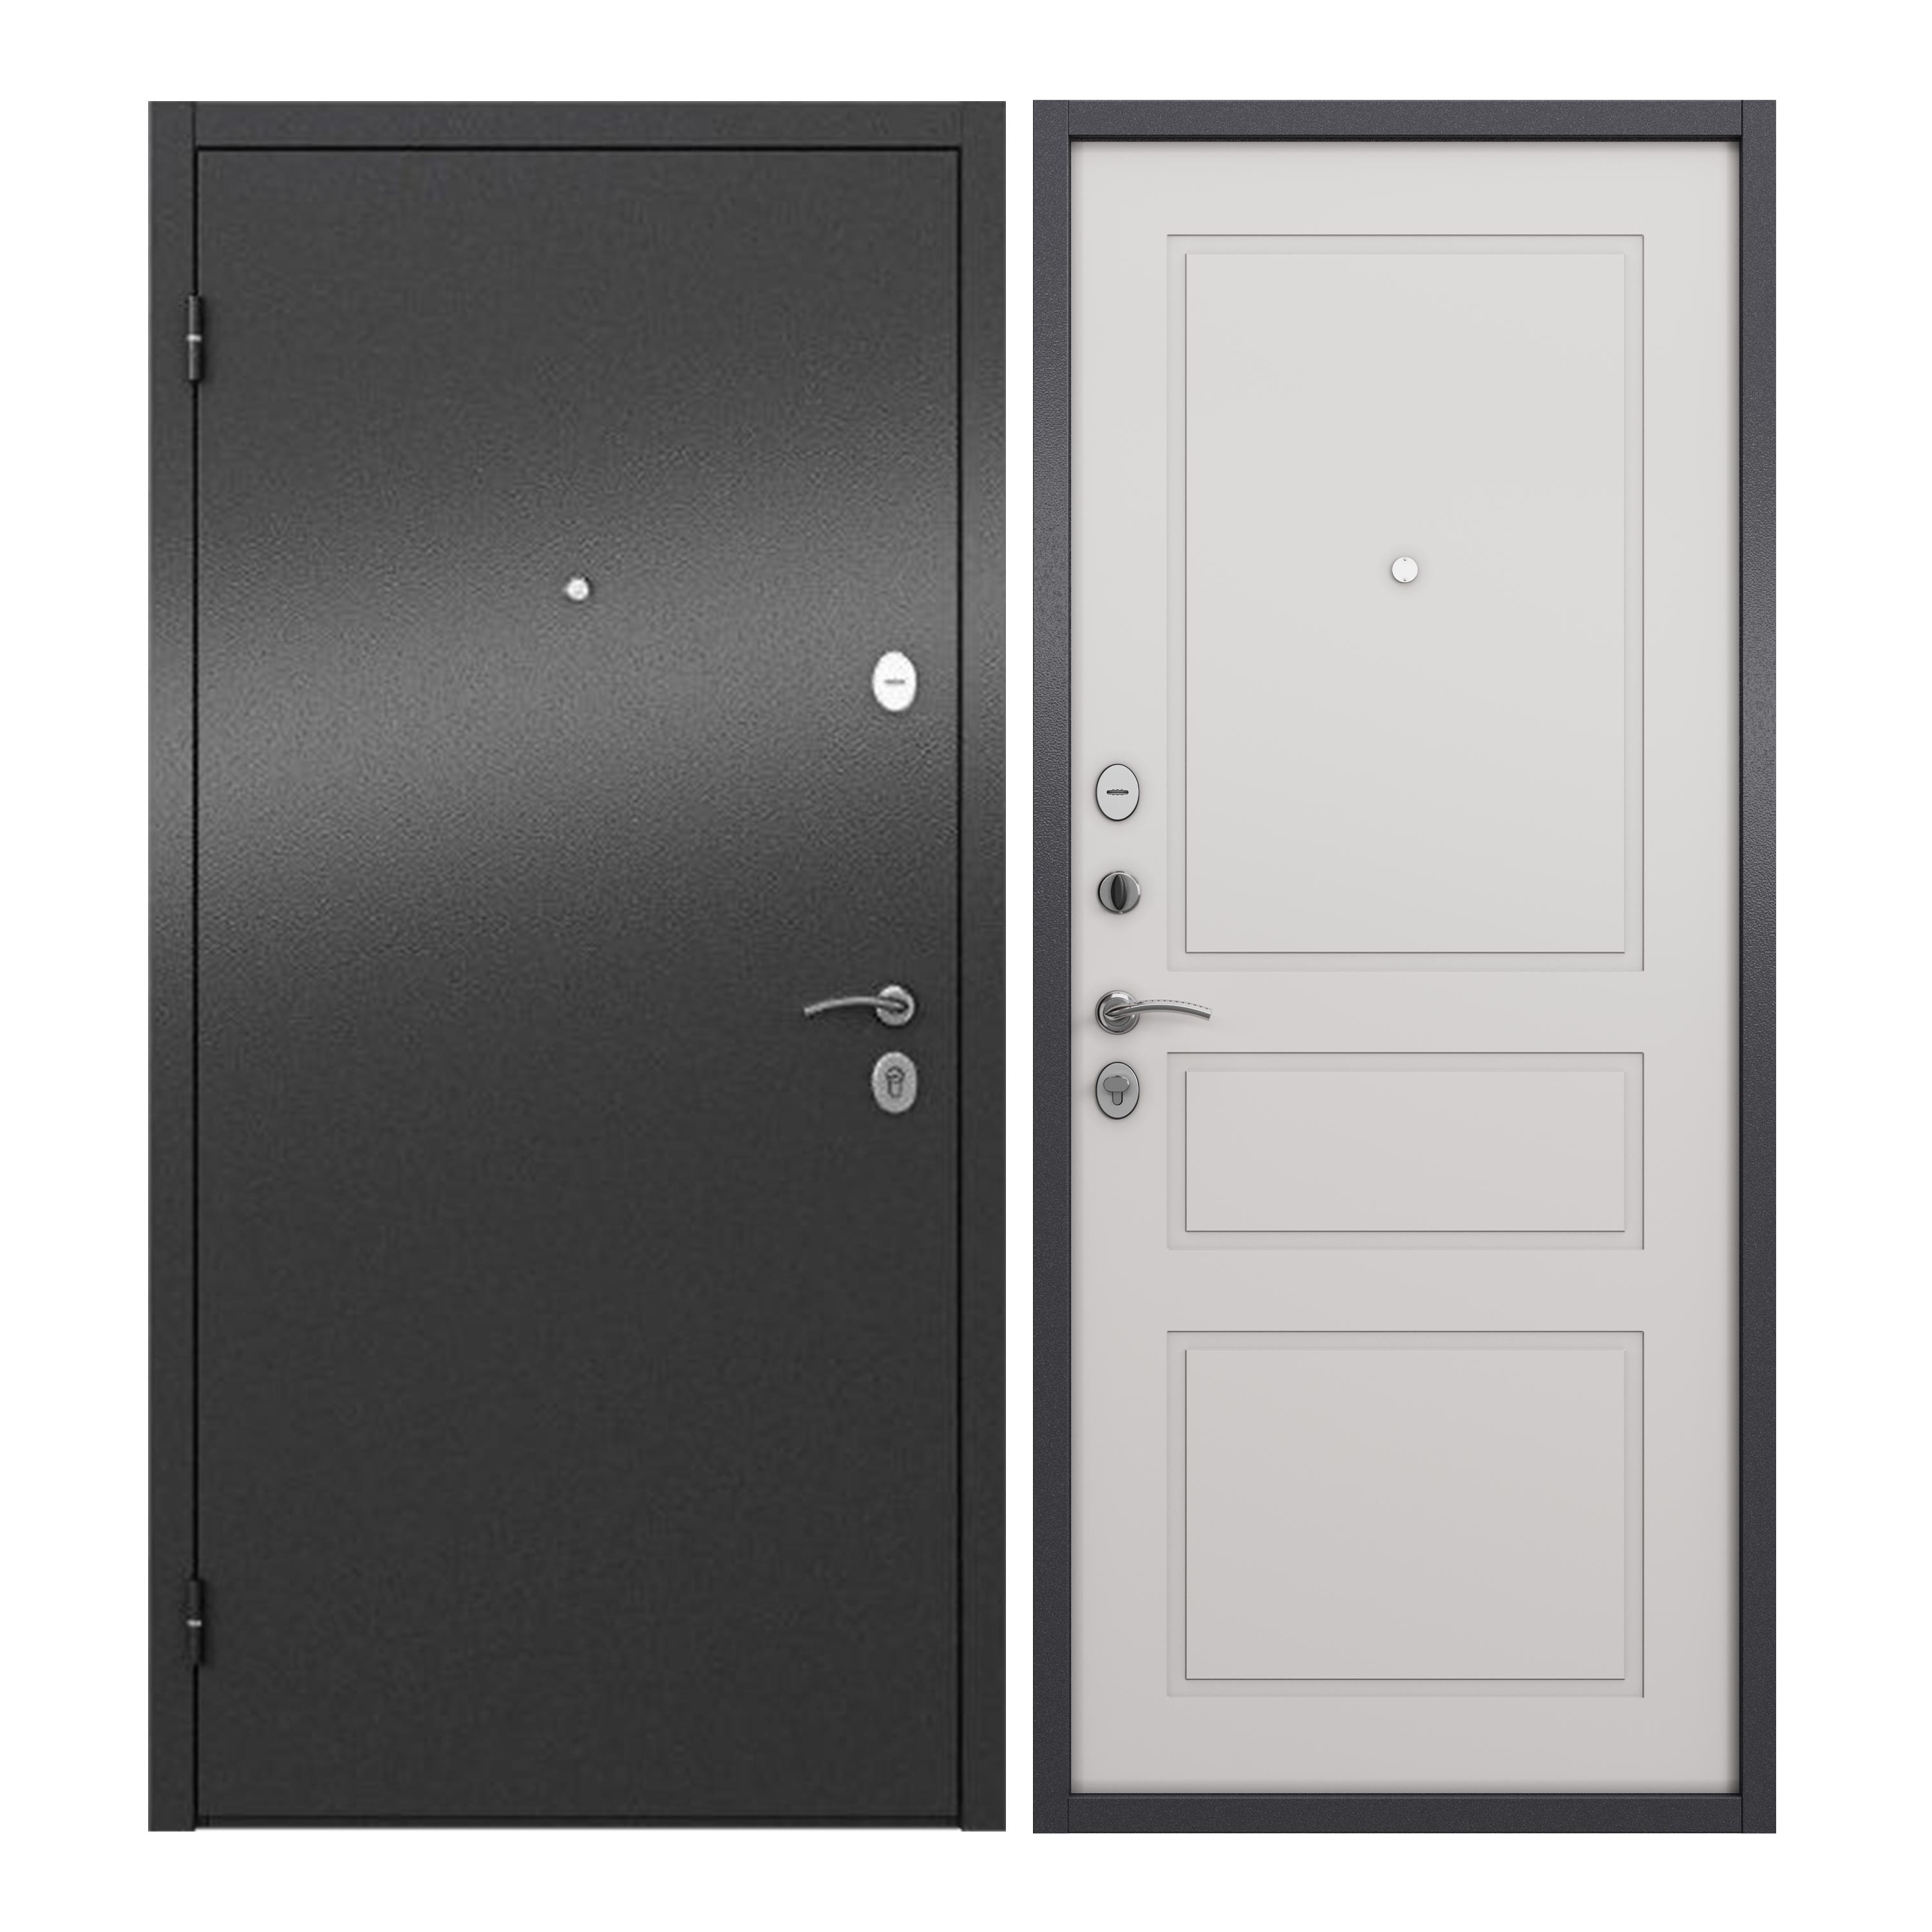 Дверь входная для квартиры ProLine металлическая Apartment 860х2050, серый/белый